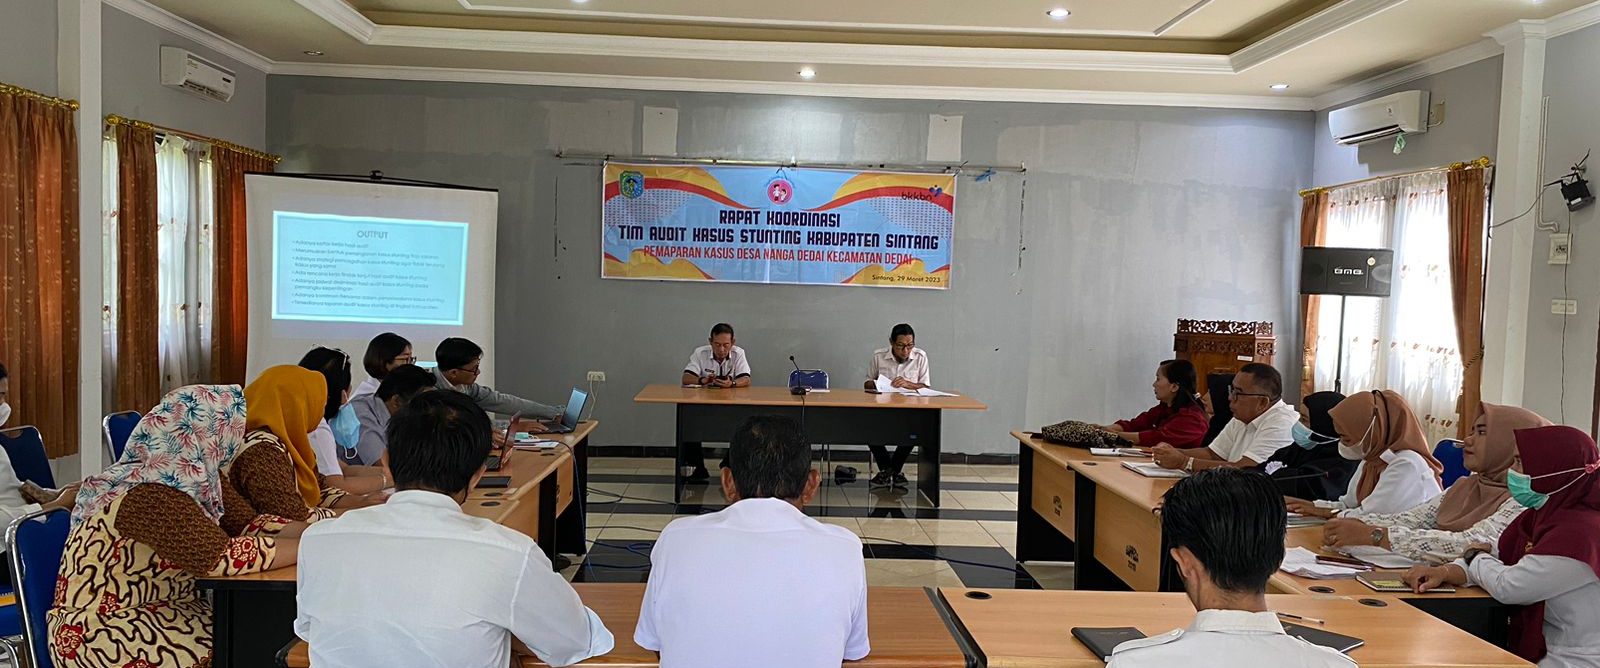 TPPS Sintang Gelar Rapat Koordinasi Tim Audit Kasus Stunting Kabupaten Sintang Khusus Desa Lokus di Kecamatan Dedai